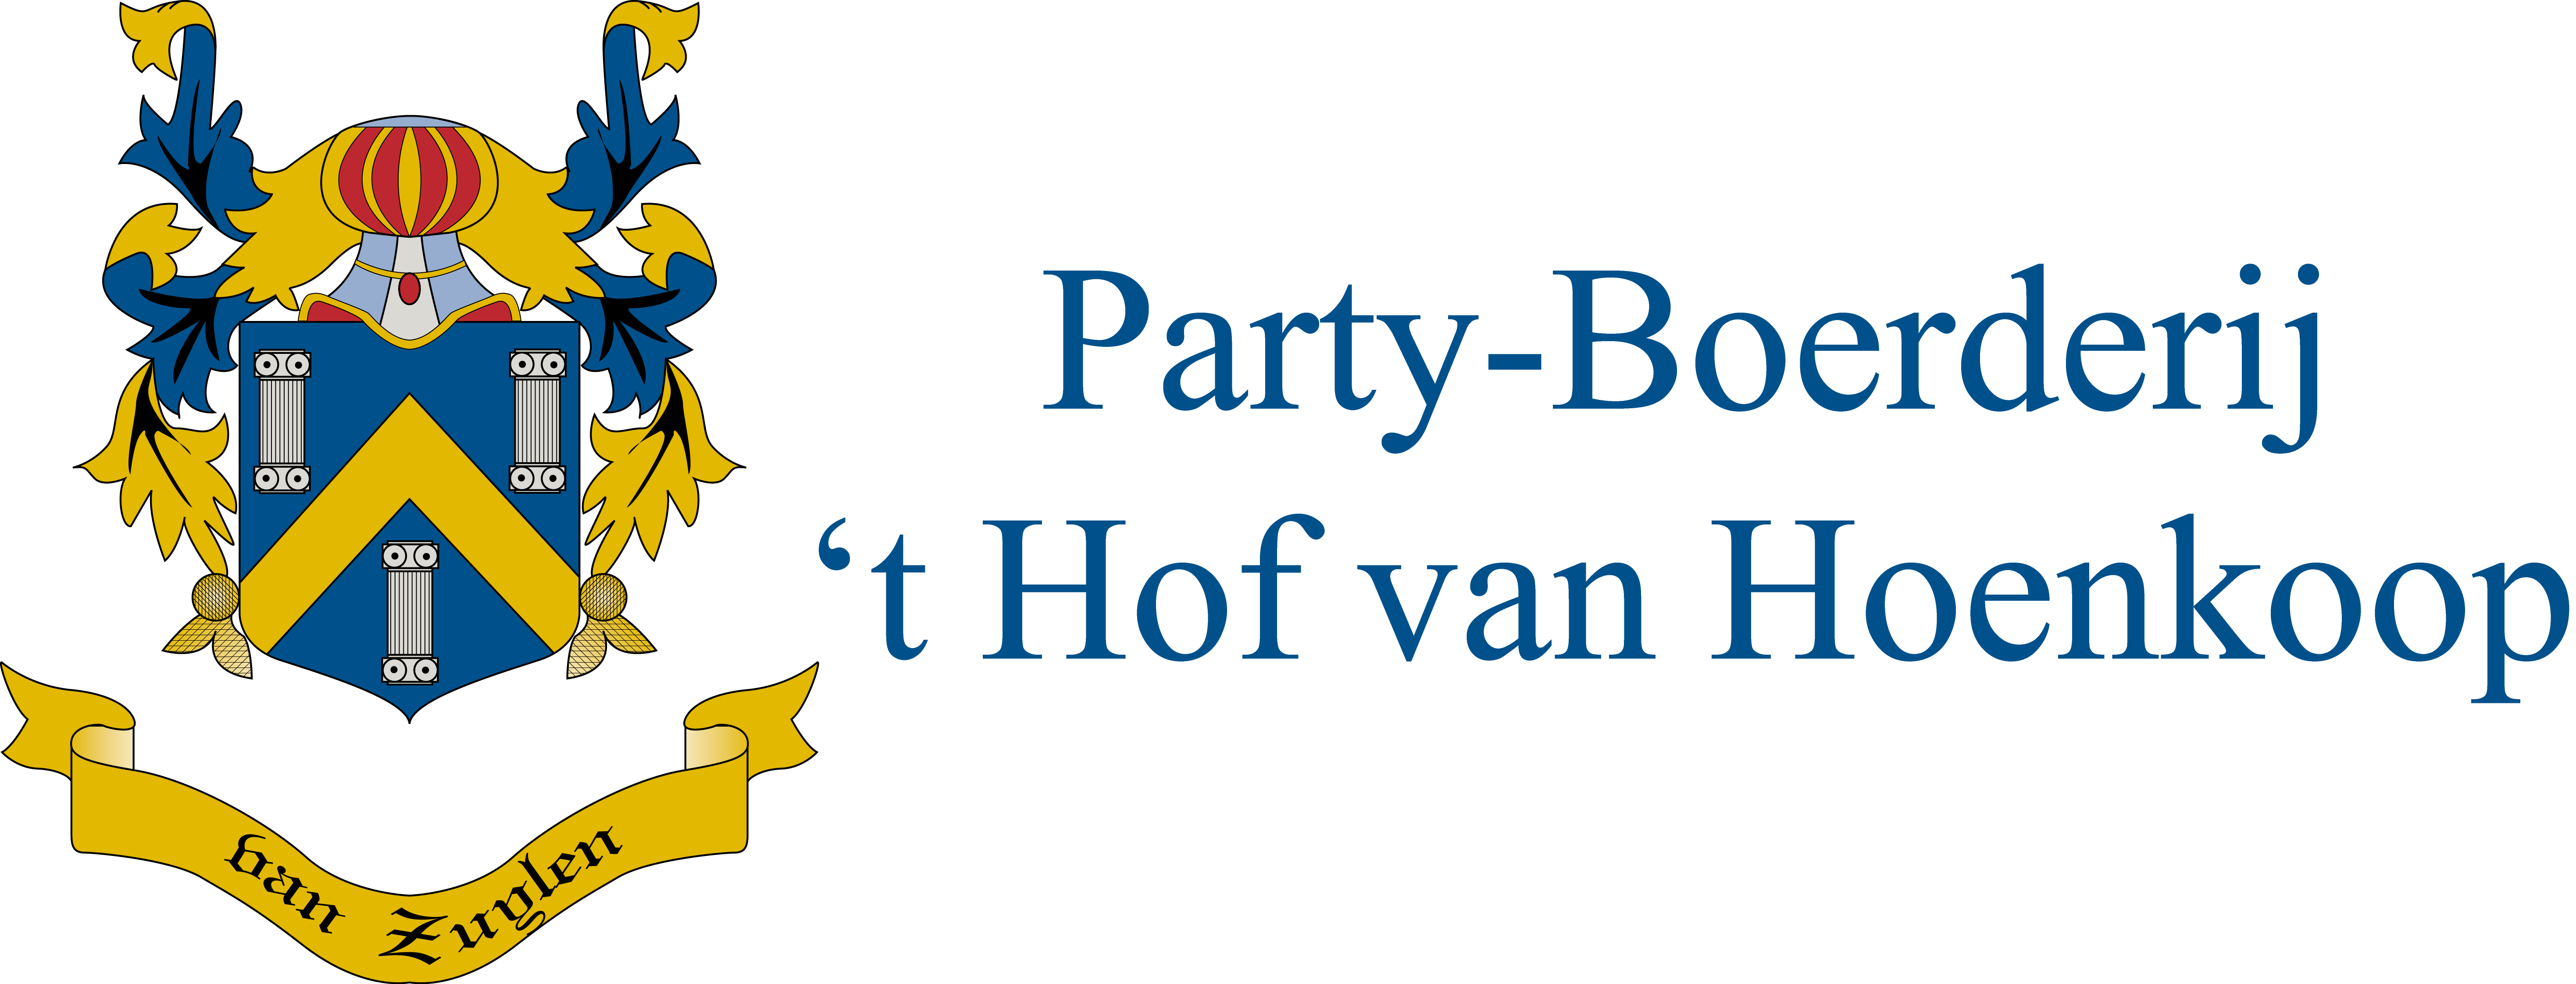 Party - Boerderij - 't Hof van Hoenkoop